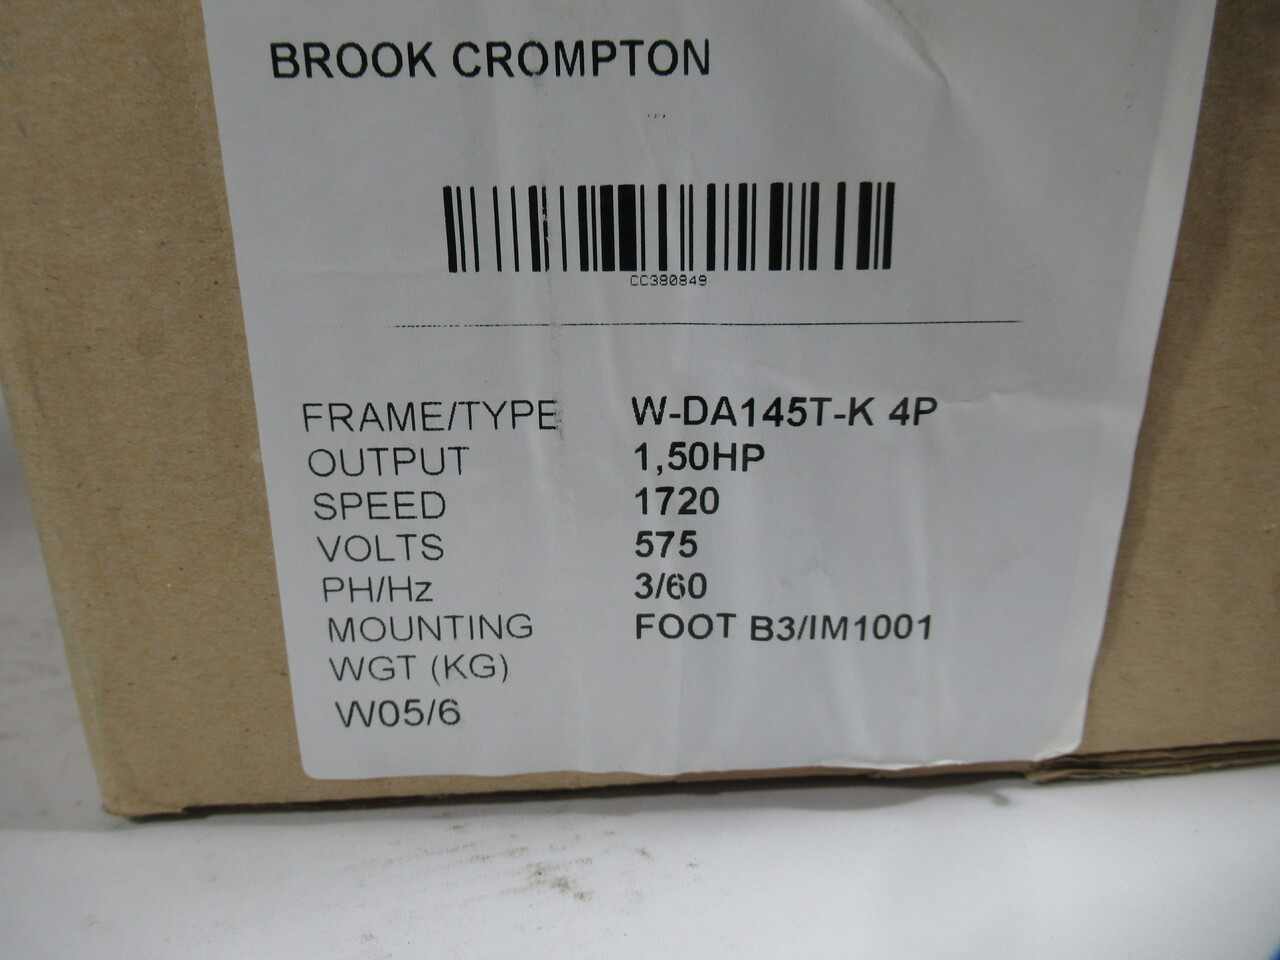 Brook Crompton 1.5HP 1720RPM 575V W-DA145T-K TEFC 3ph 1.8A 60Hz NEW